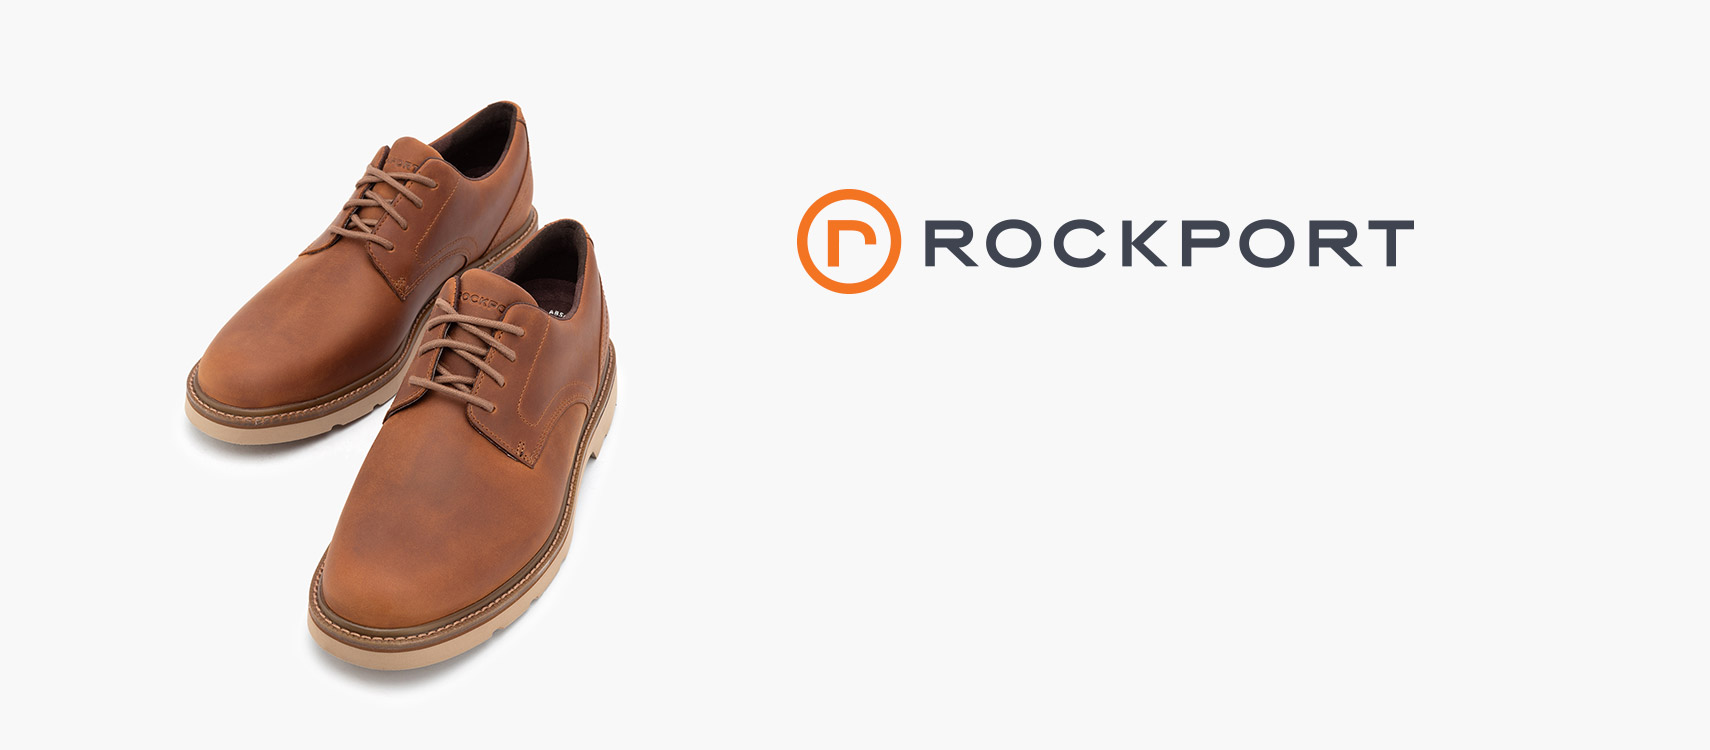 rockport brand